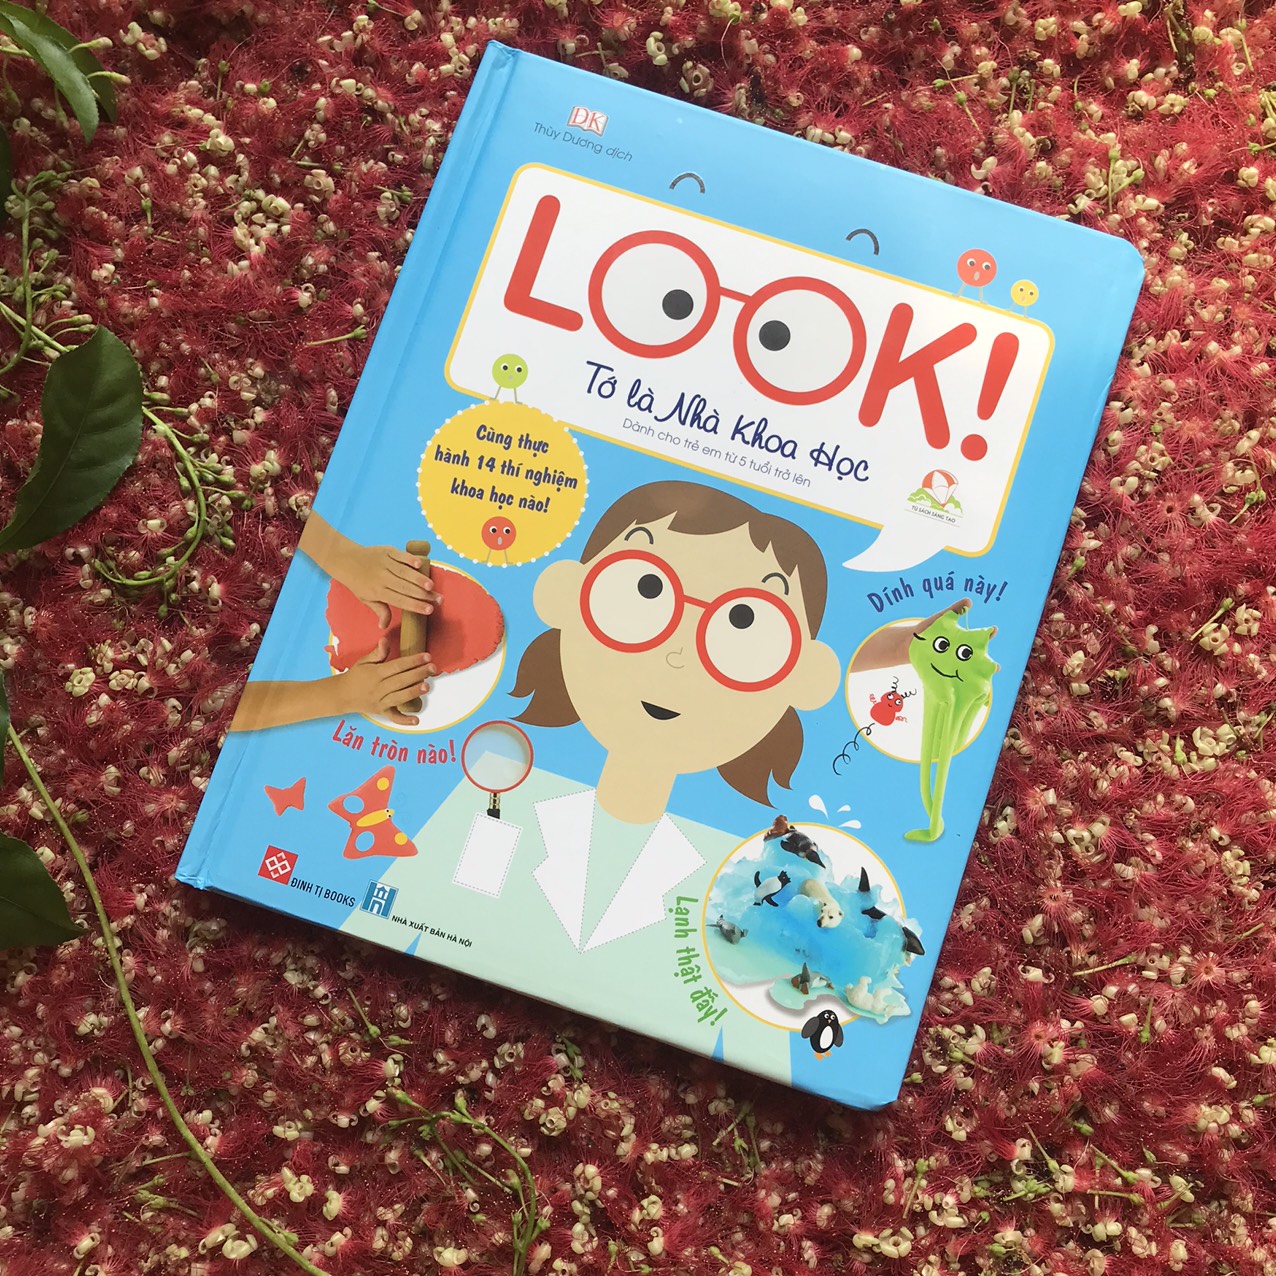 Combo 3 cuốn sách hấp dẫn bạn đọc trẻ: Look! - Tớ là kỹ sư + Look! - Tớ là đầu bếp + Look! - Tớ là nhà khoa học